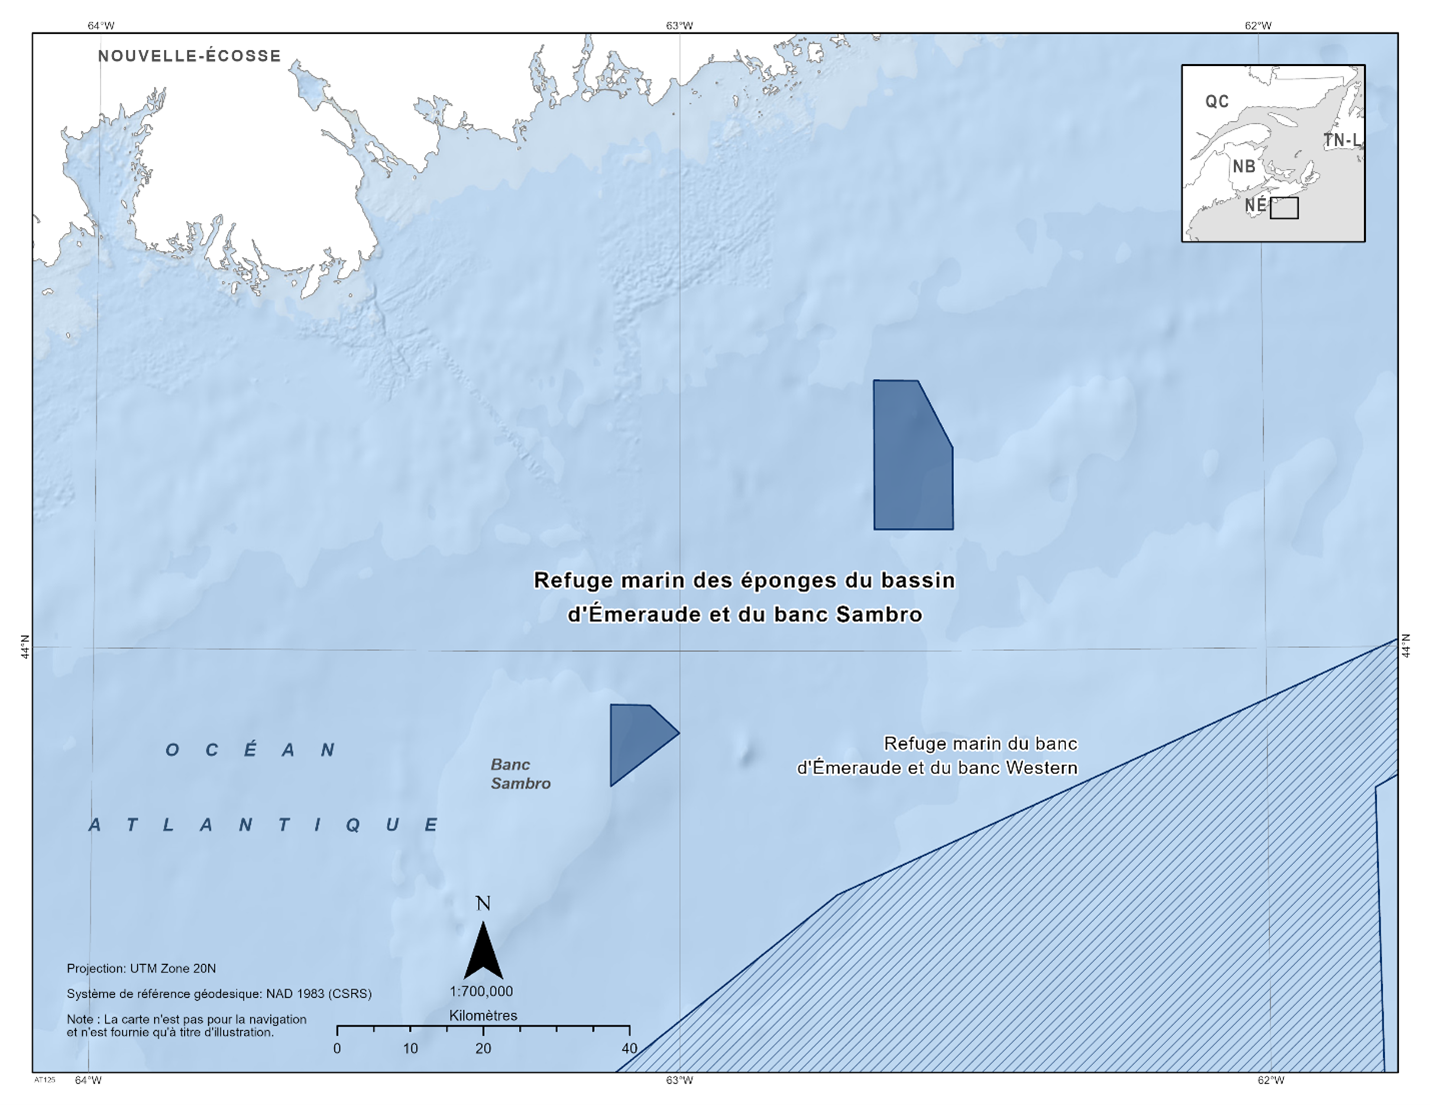 Carte du refuge marin des éponges du bassin d'Emeraude et du banc Sambro en bleu foncé. La carte présente également d'autres refuges marins situés à proximité avec des lignes diagonales bleu foncé (Western et Emerald Banks Marine Refuge).